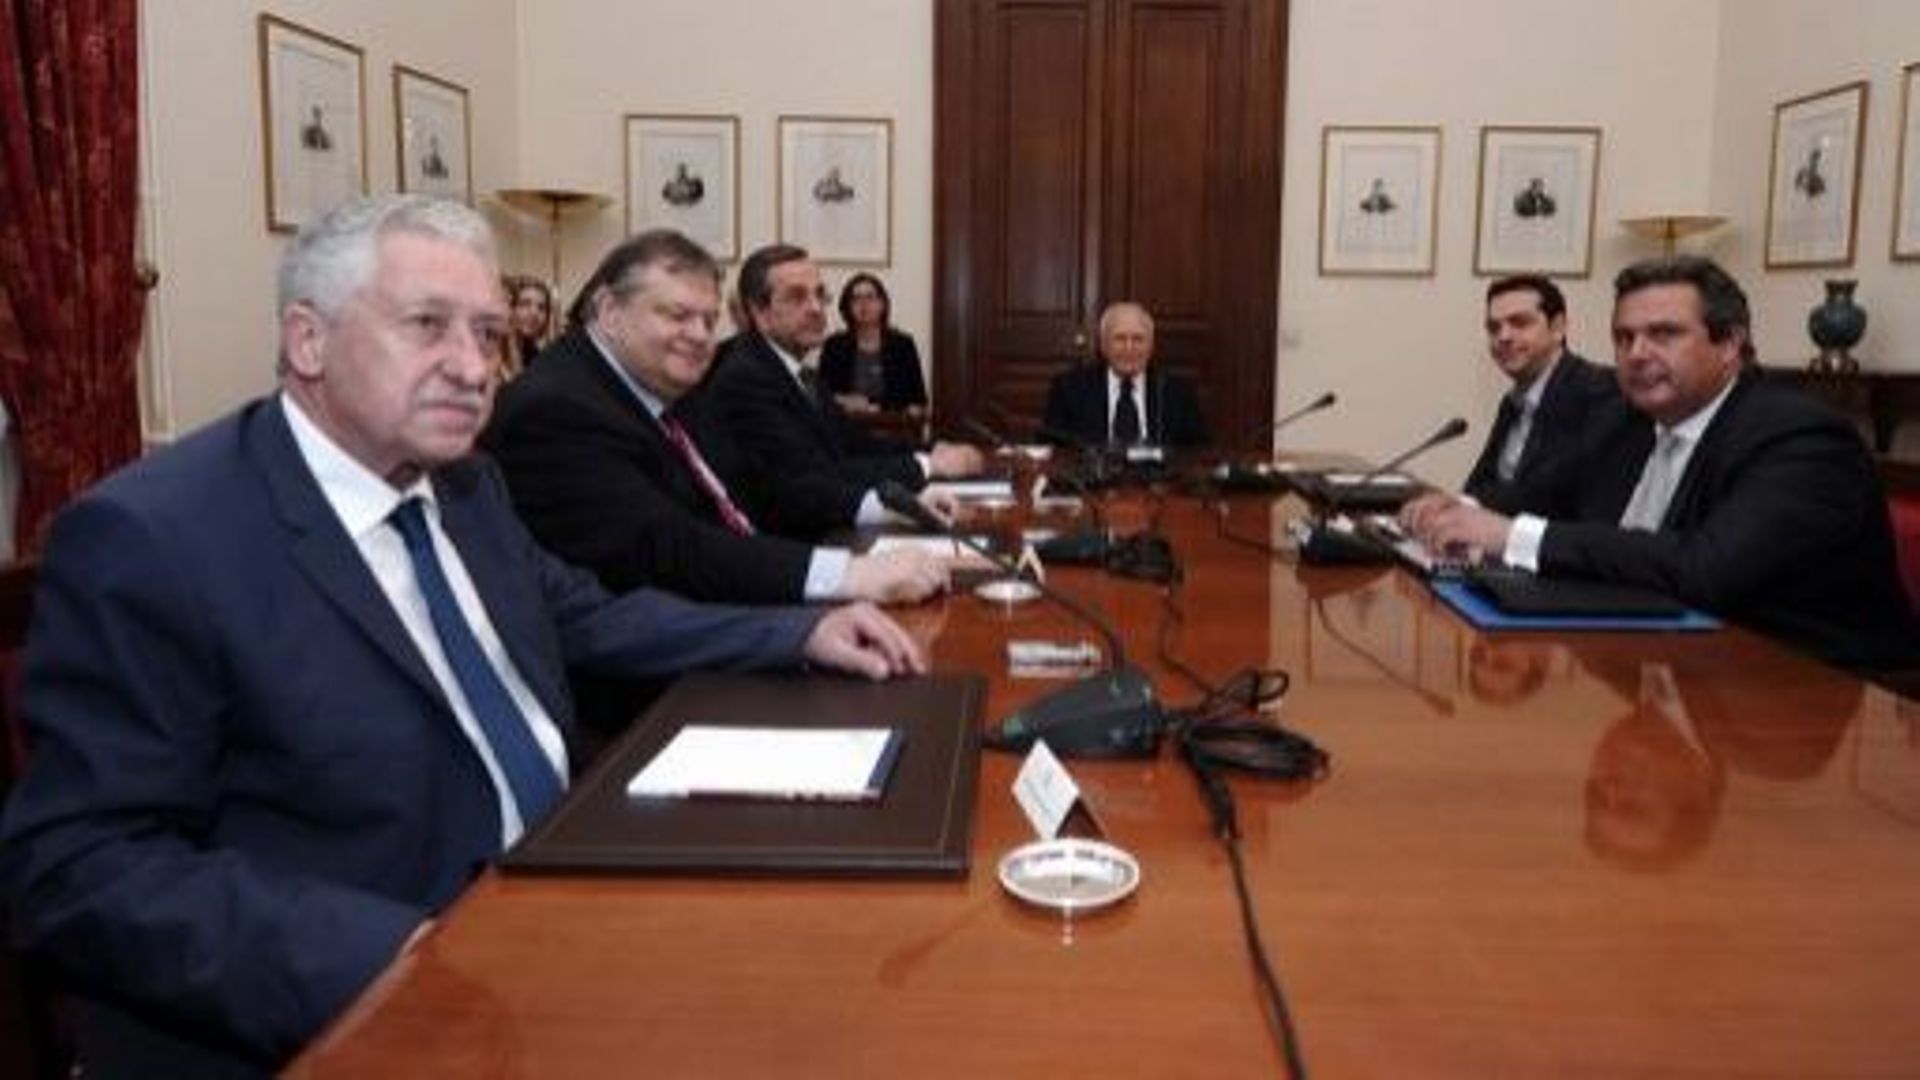 Réunion entre le président grec Carolos Papoulias (c) et les chefs de partis, le 15 mai 2012 à Athènes